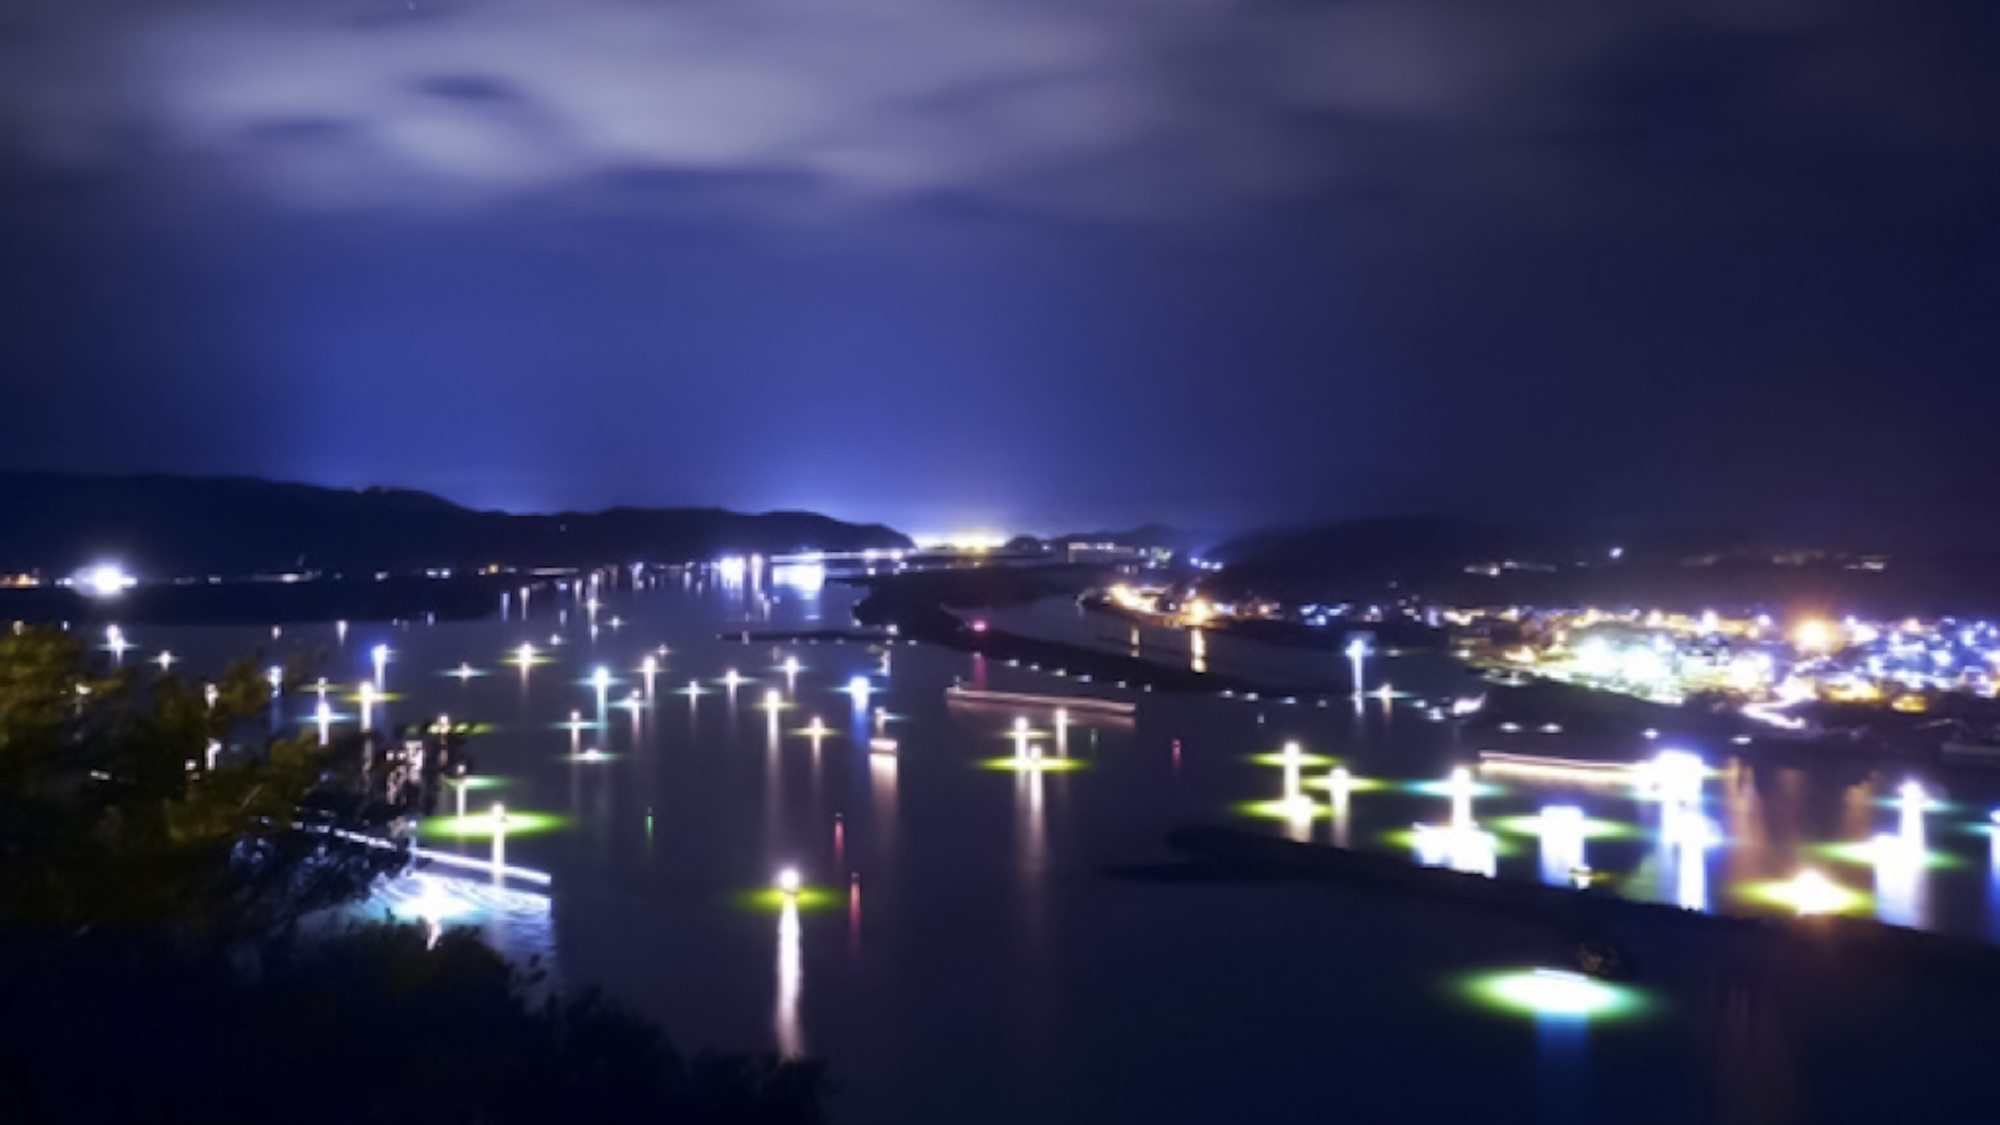 ・【シラス漁】川面を艶るシラスウナギ漁の「灯」。キラキラと光る川はまるで星空のようです※12月〜4月